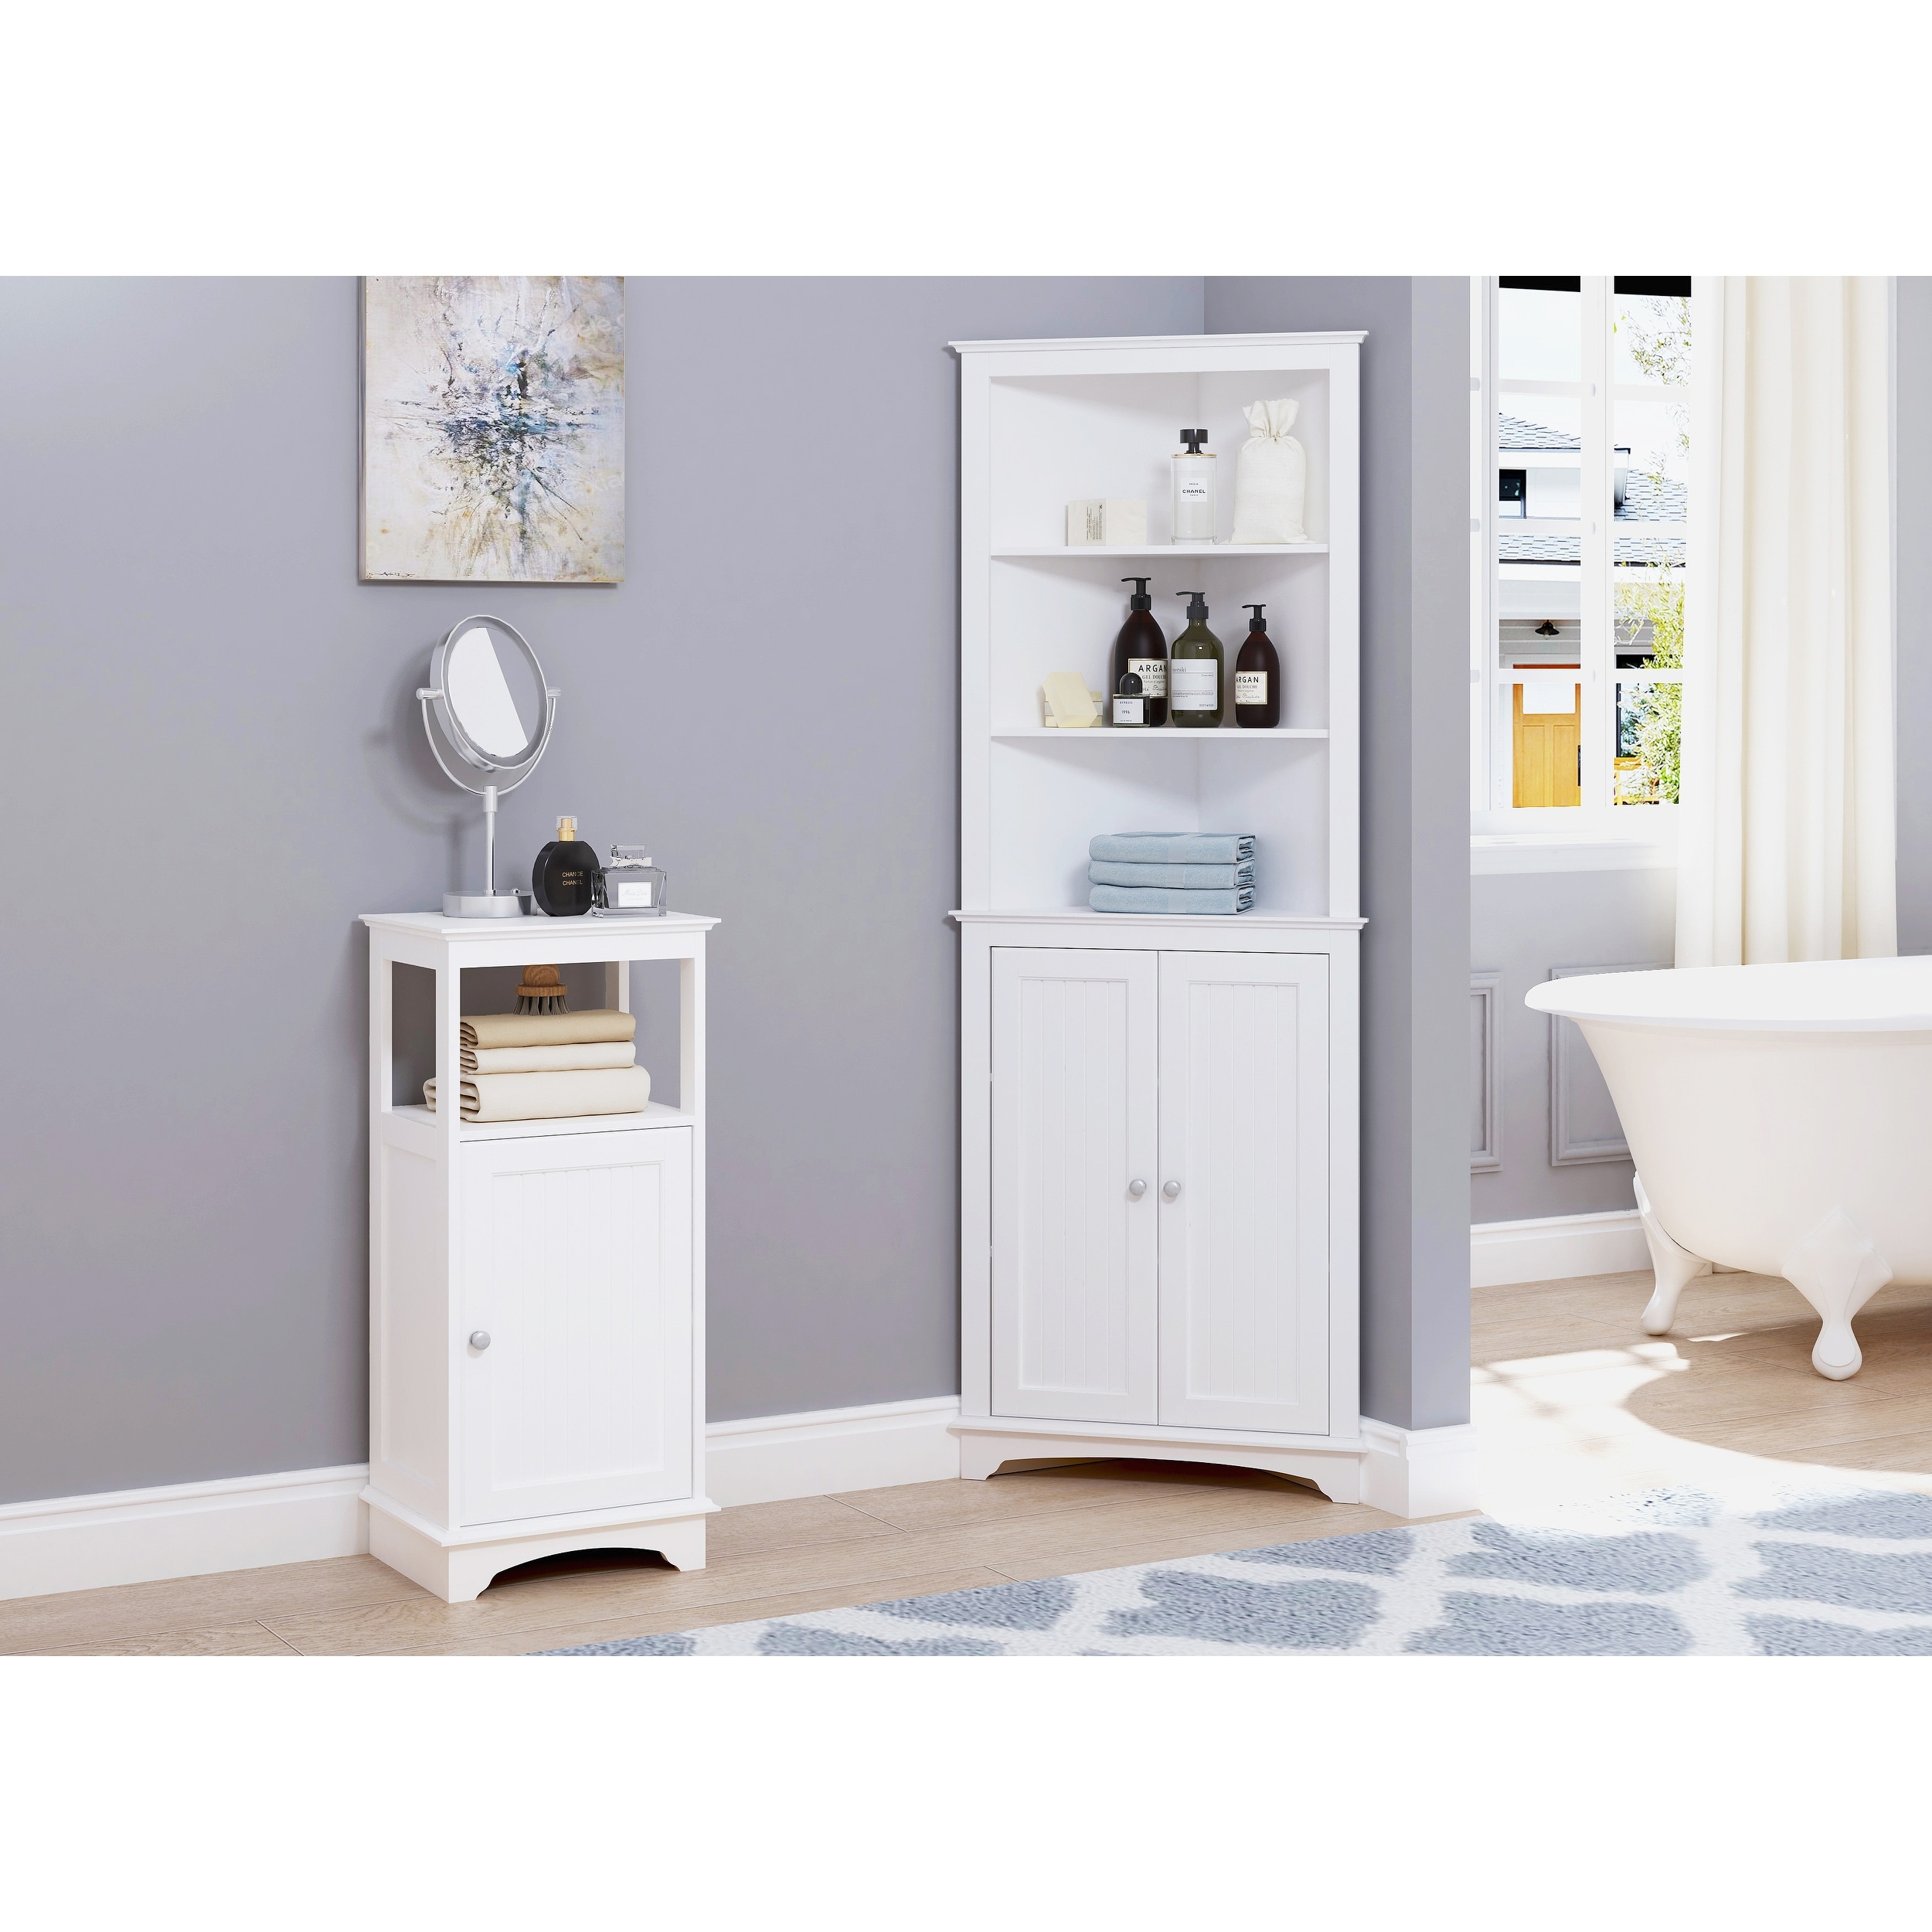 Bathroom Storage Corner Cabinet with Adjustable Shelves - Bed Bath & Beyond  - 36661995